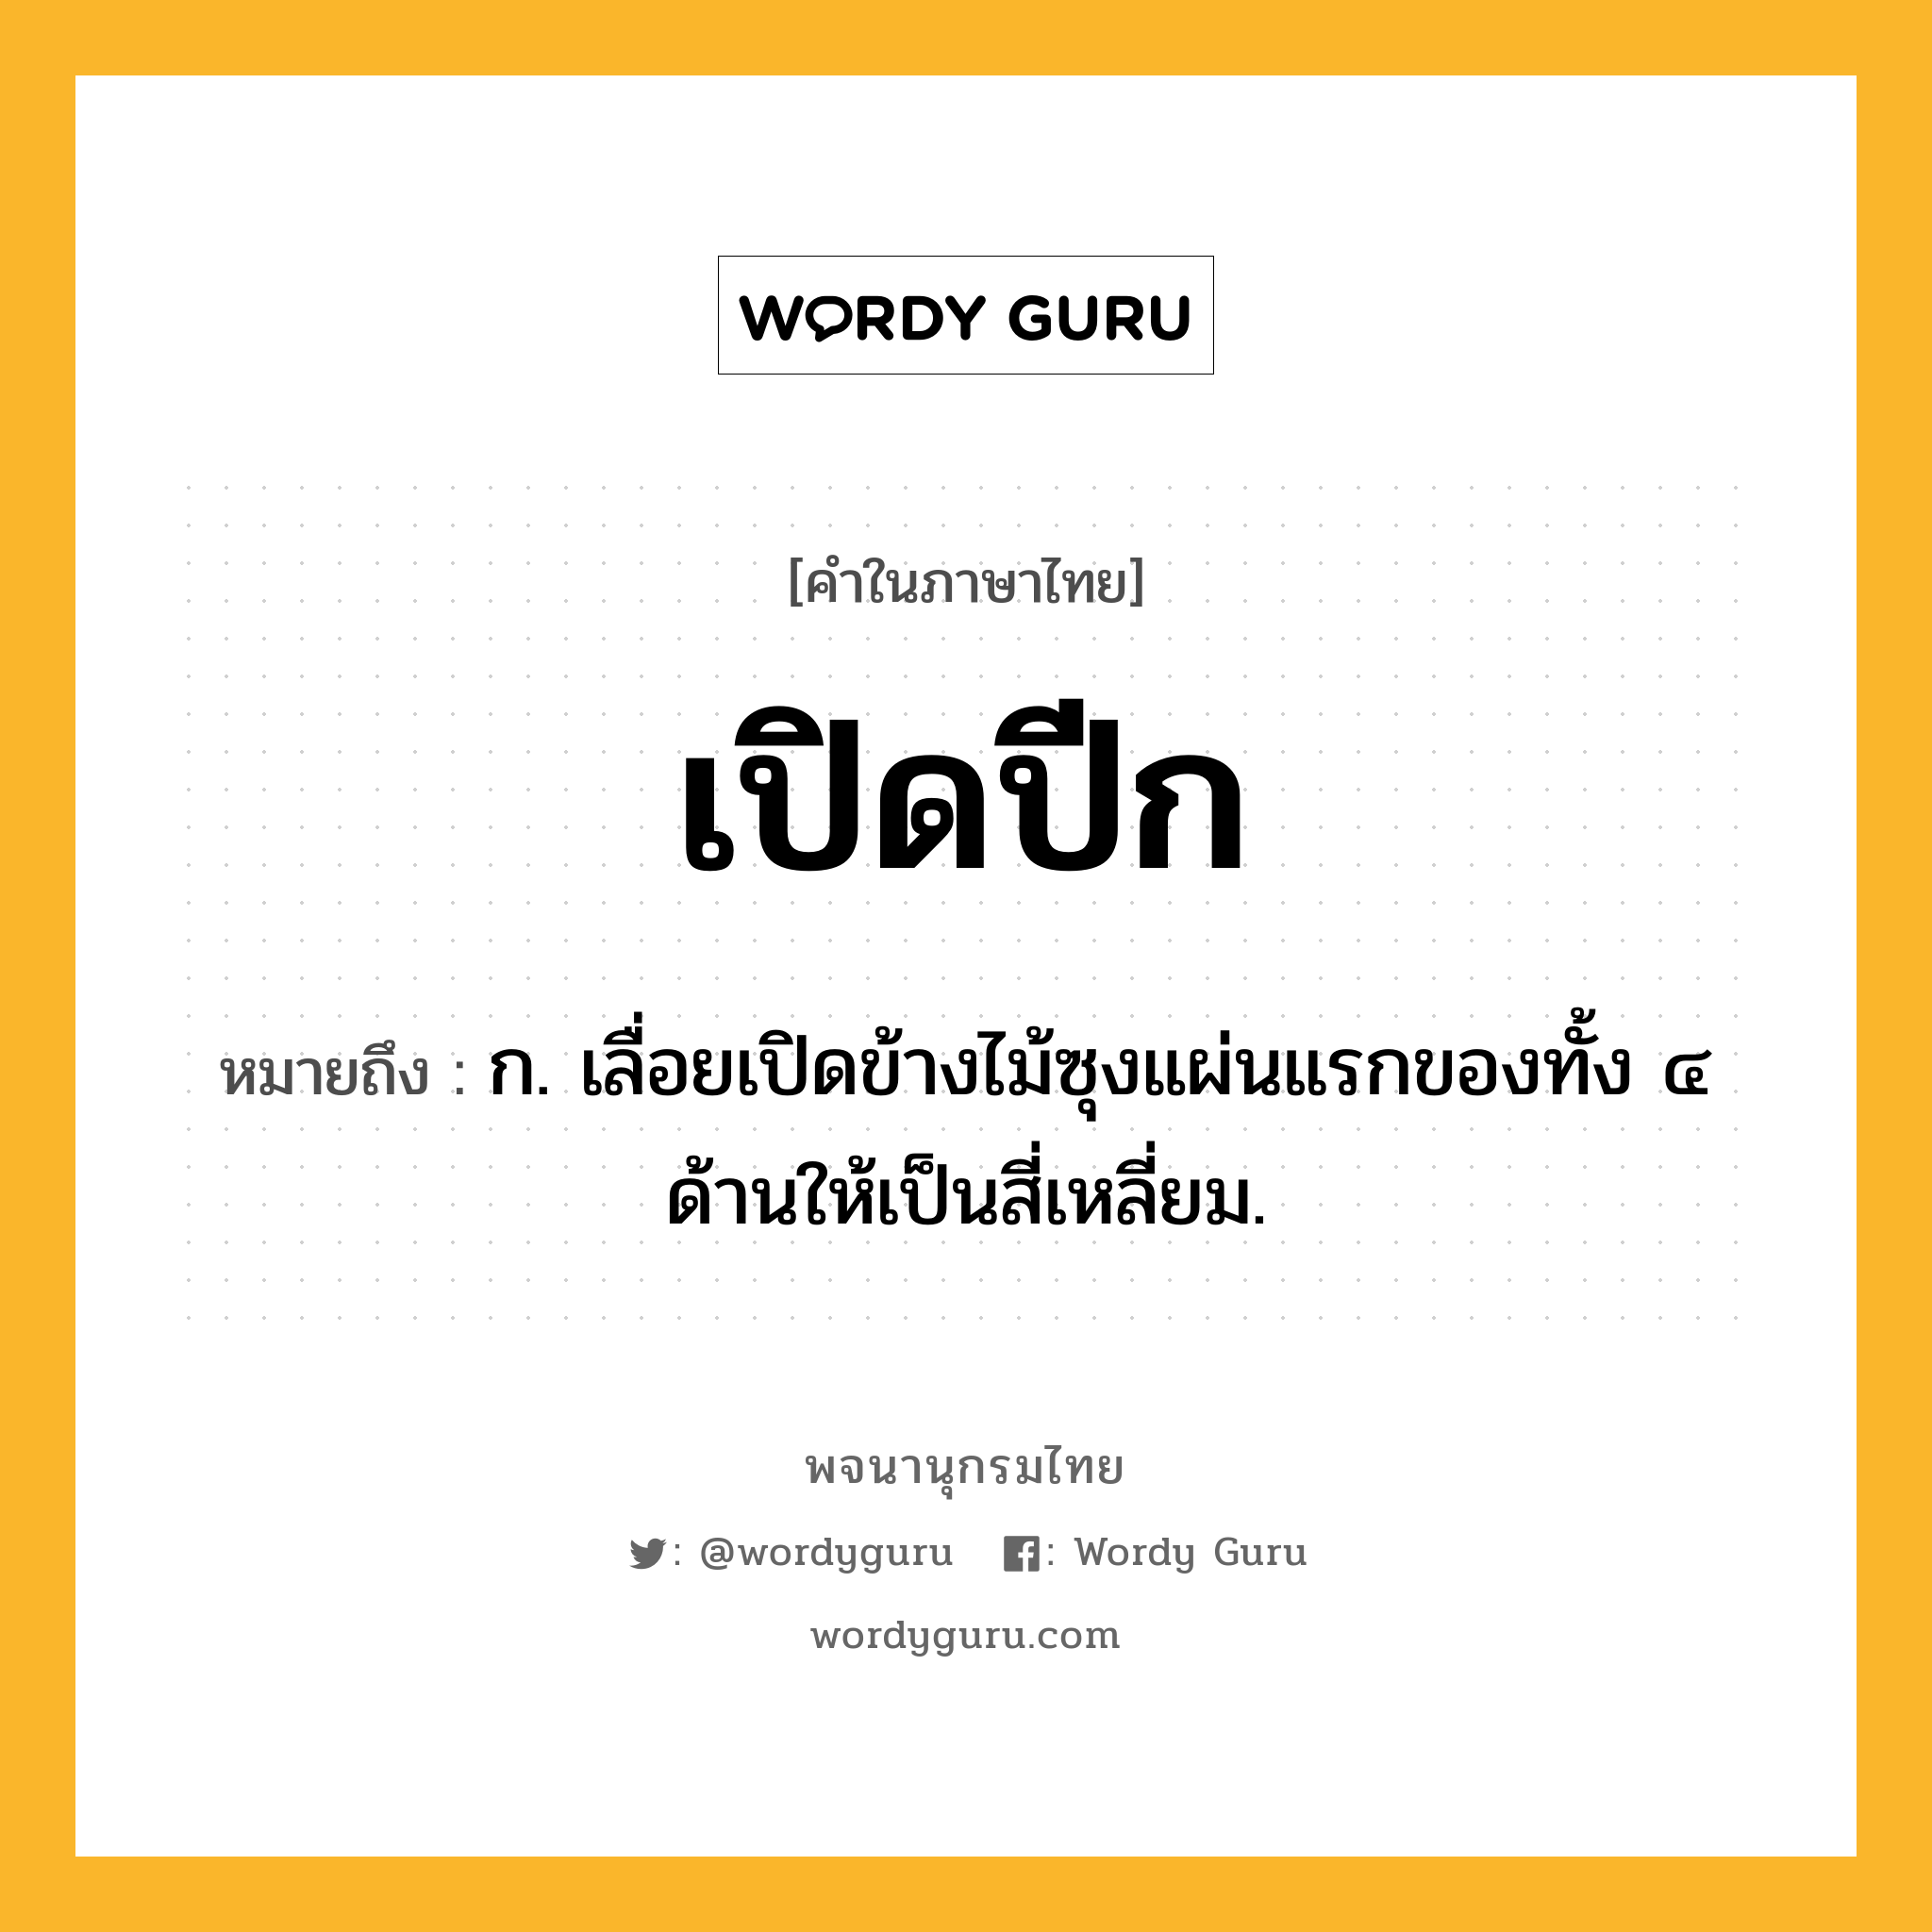 เปิดปีก หมายถึงอะไร?, คำในภาษาไทย เปิดปีก หมายถึง ก. เลื่อยเปิดข้างไม้ซุงแผ่นแรกของทั้ง ๔ ด้านให้เป็นสี่เหลี่ยม.